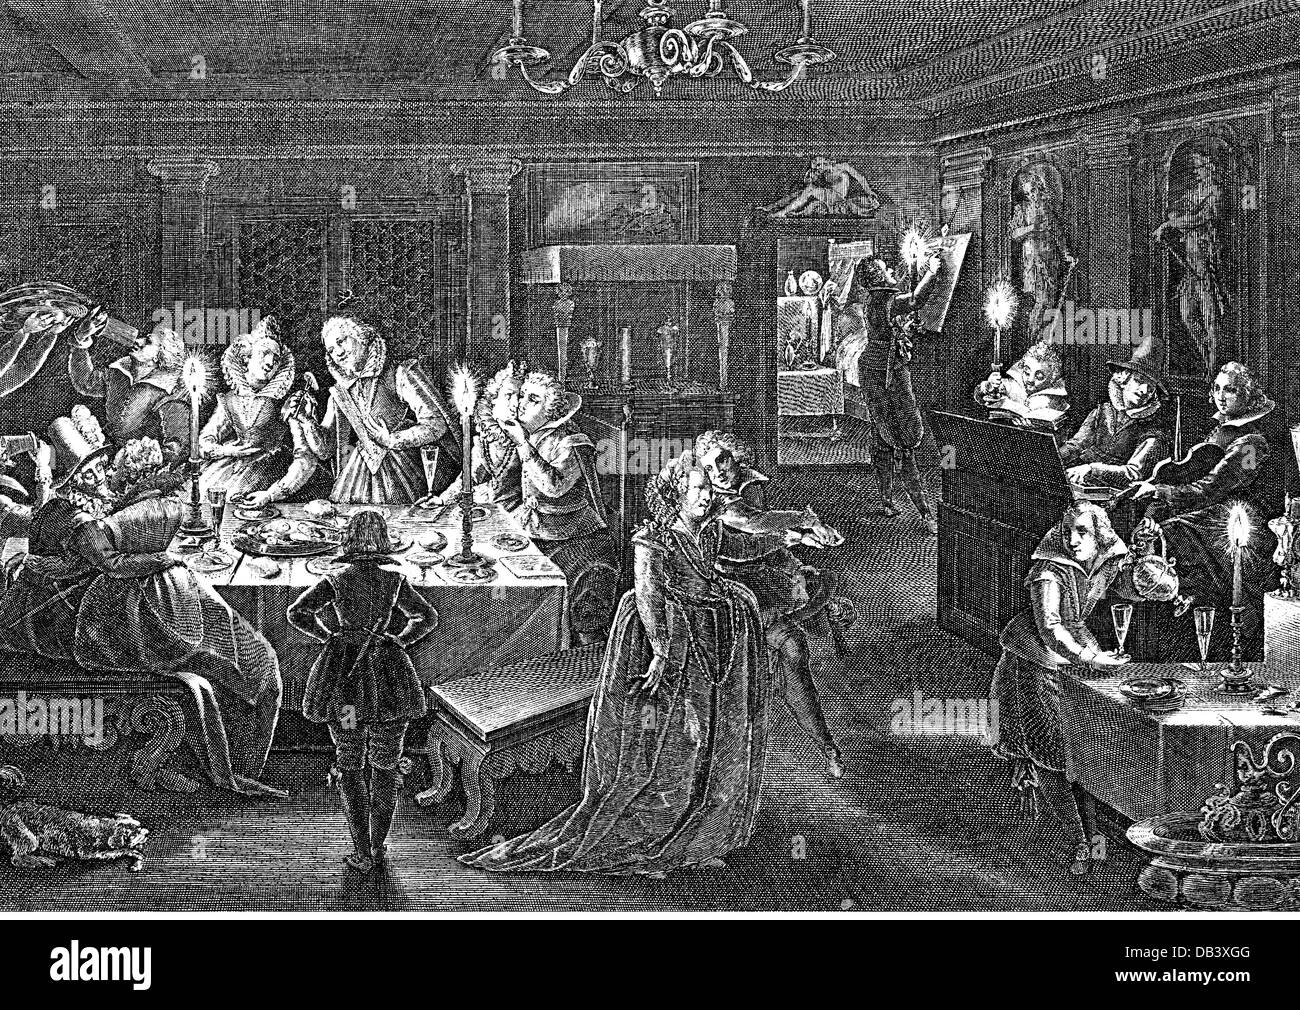 Feste, orge, binges, harem feste, abbuffata di notte, dopo Gabriel Weyer (1580 - 1640), incisione su rame di Peter Isselburg (circa 1580 - 1630 / 1631), 1613, l'artista del diritto d'autore non deve essere cancellata Foto Stock